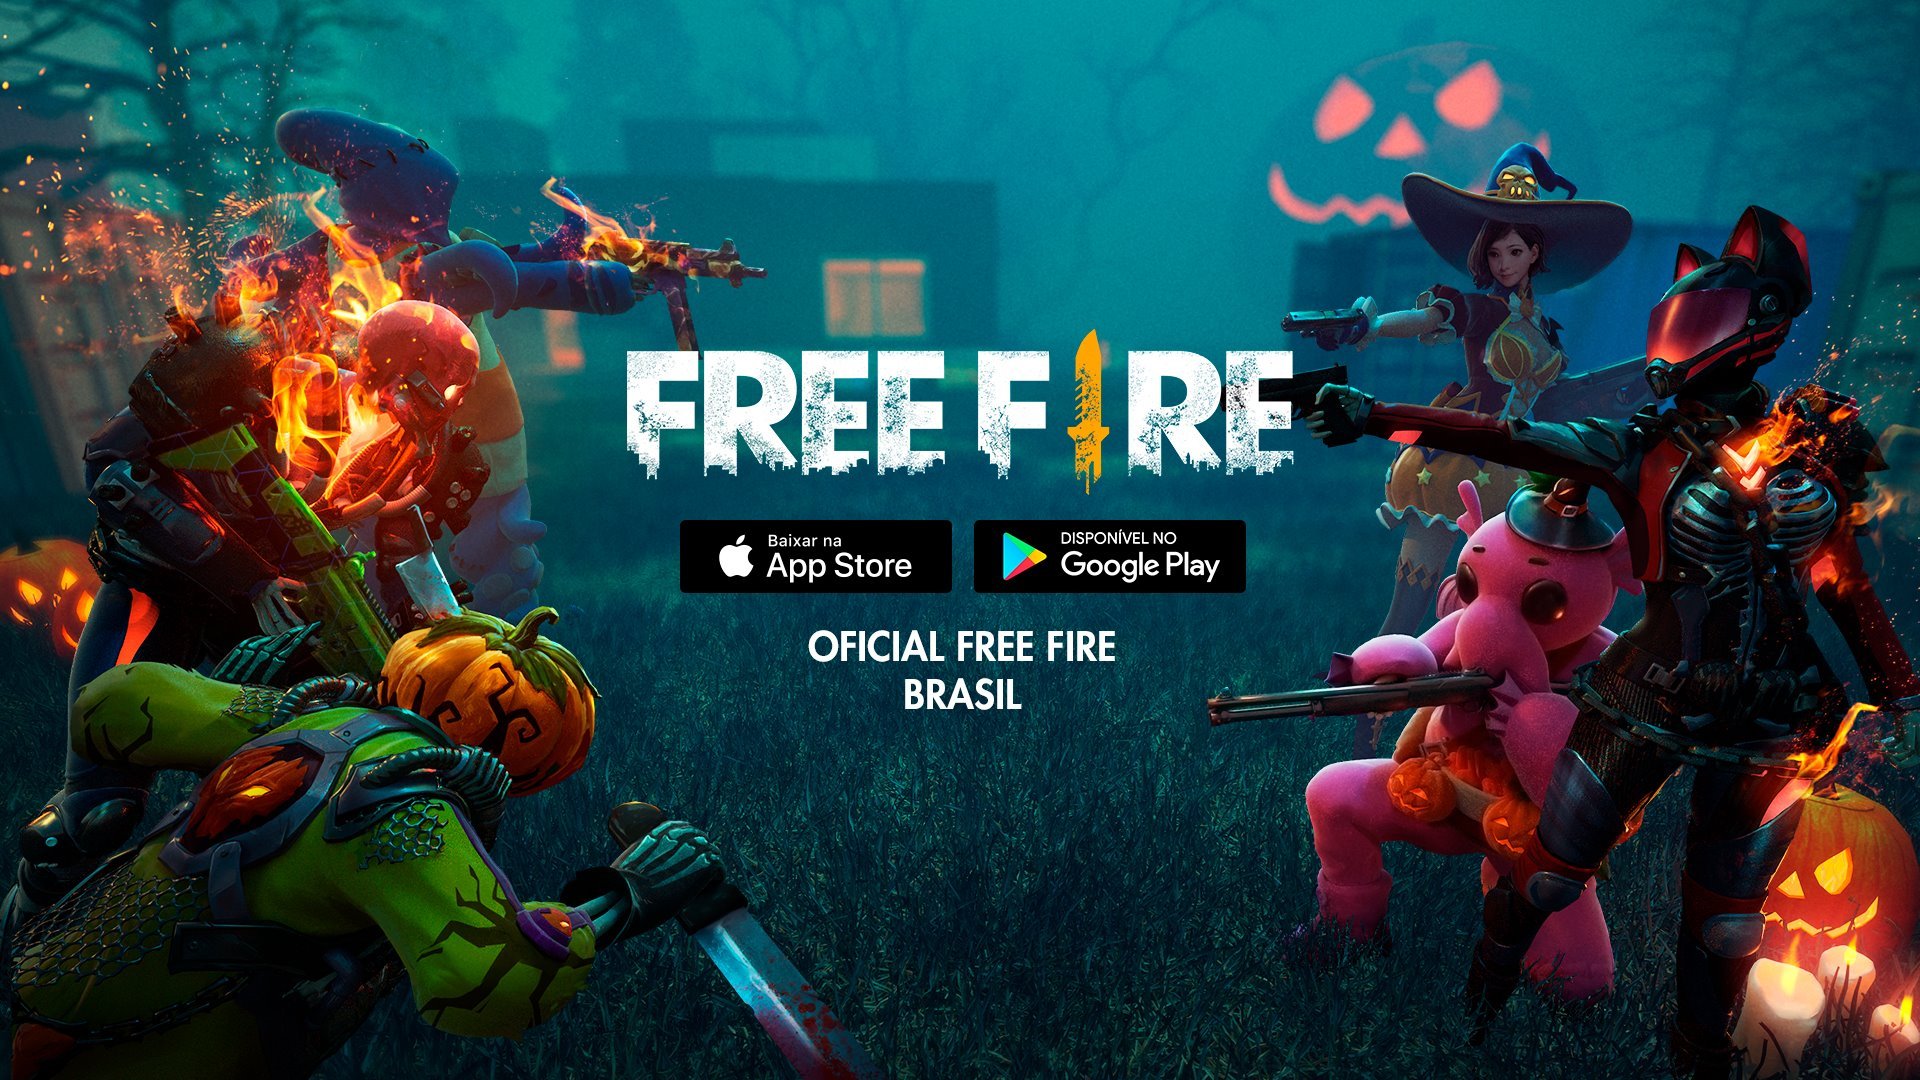 Free Fire - Códigos Setembro 2021 - Obtém itens e recompensas